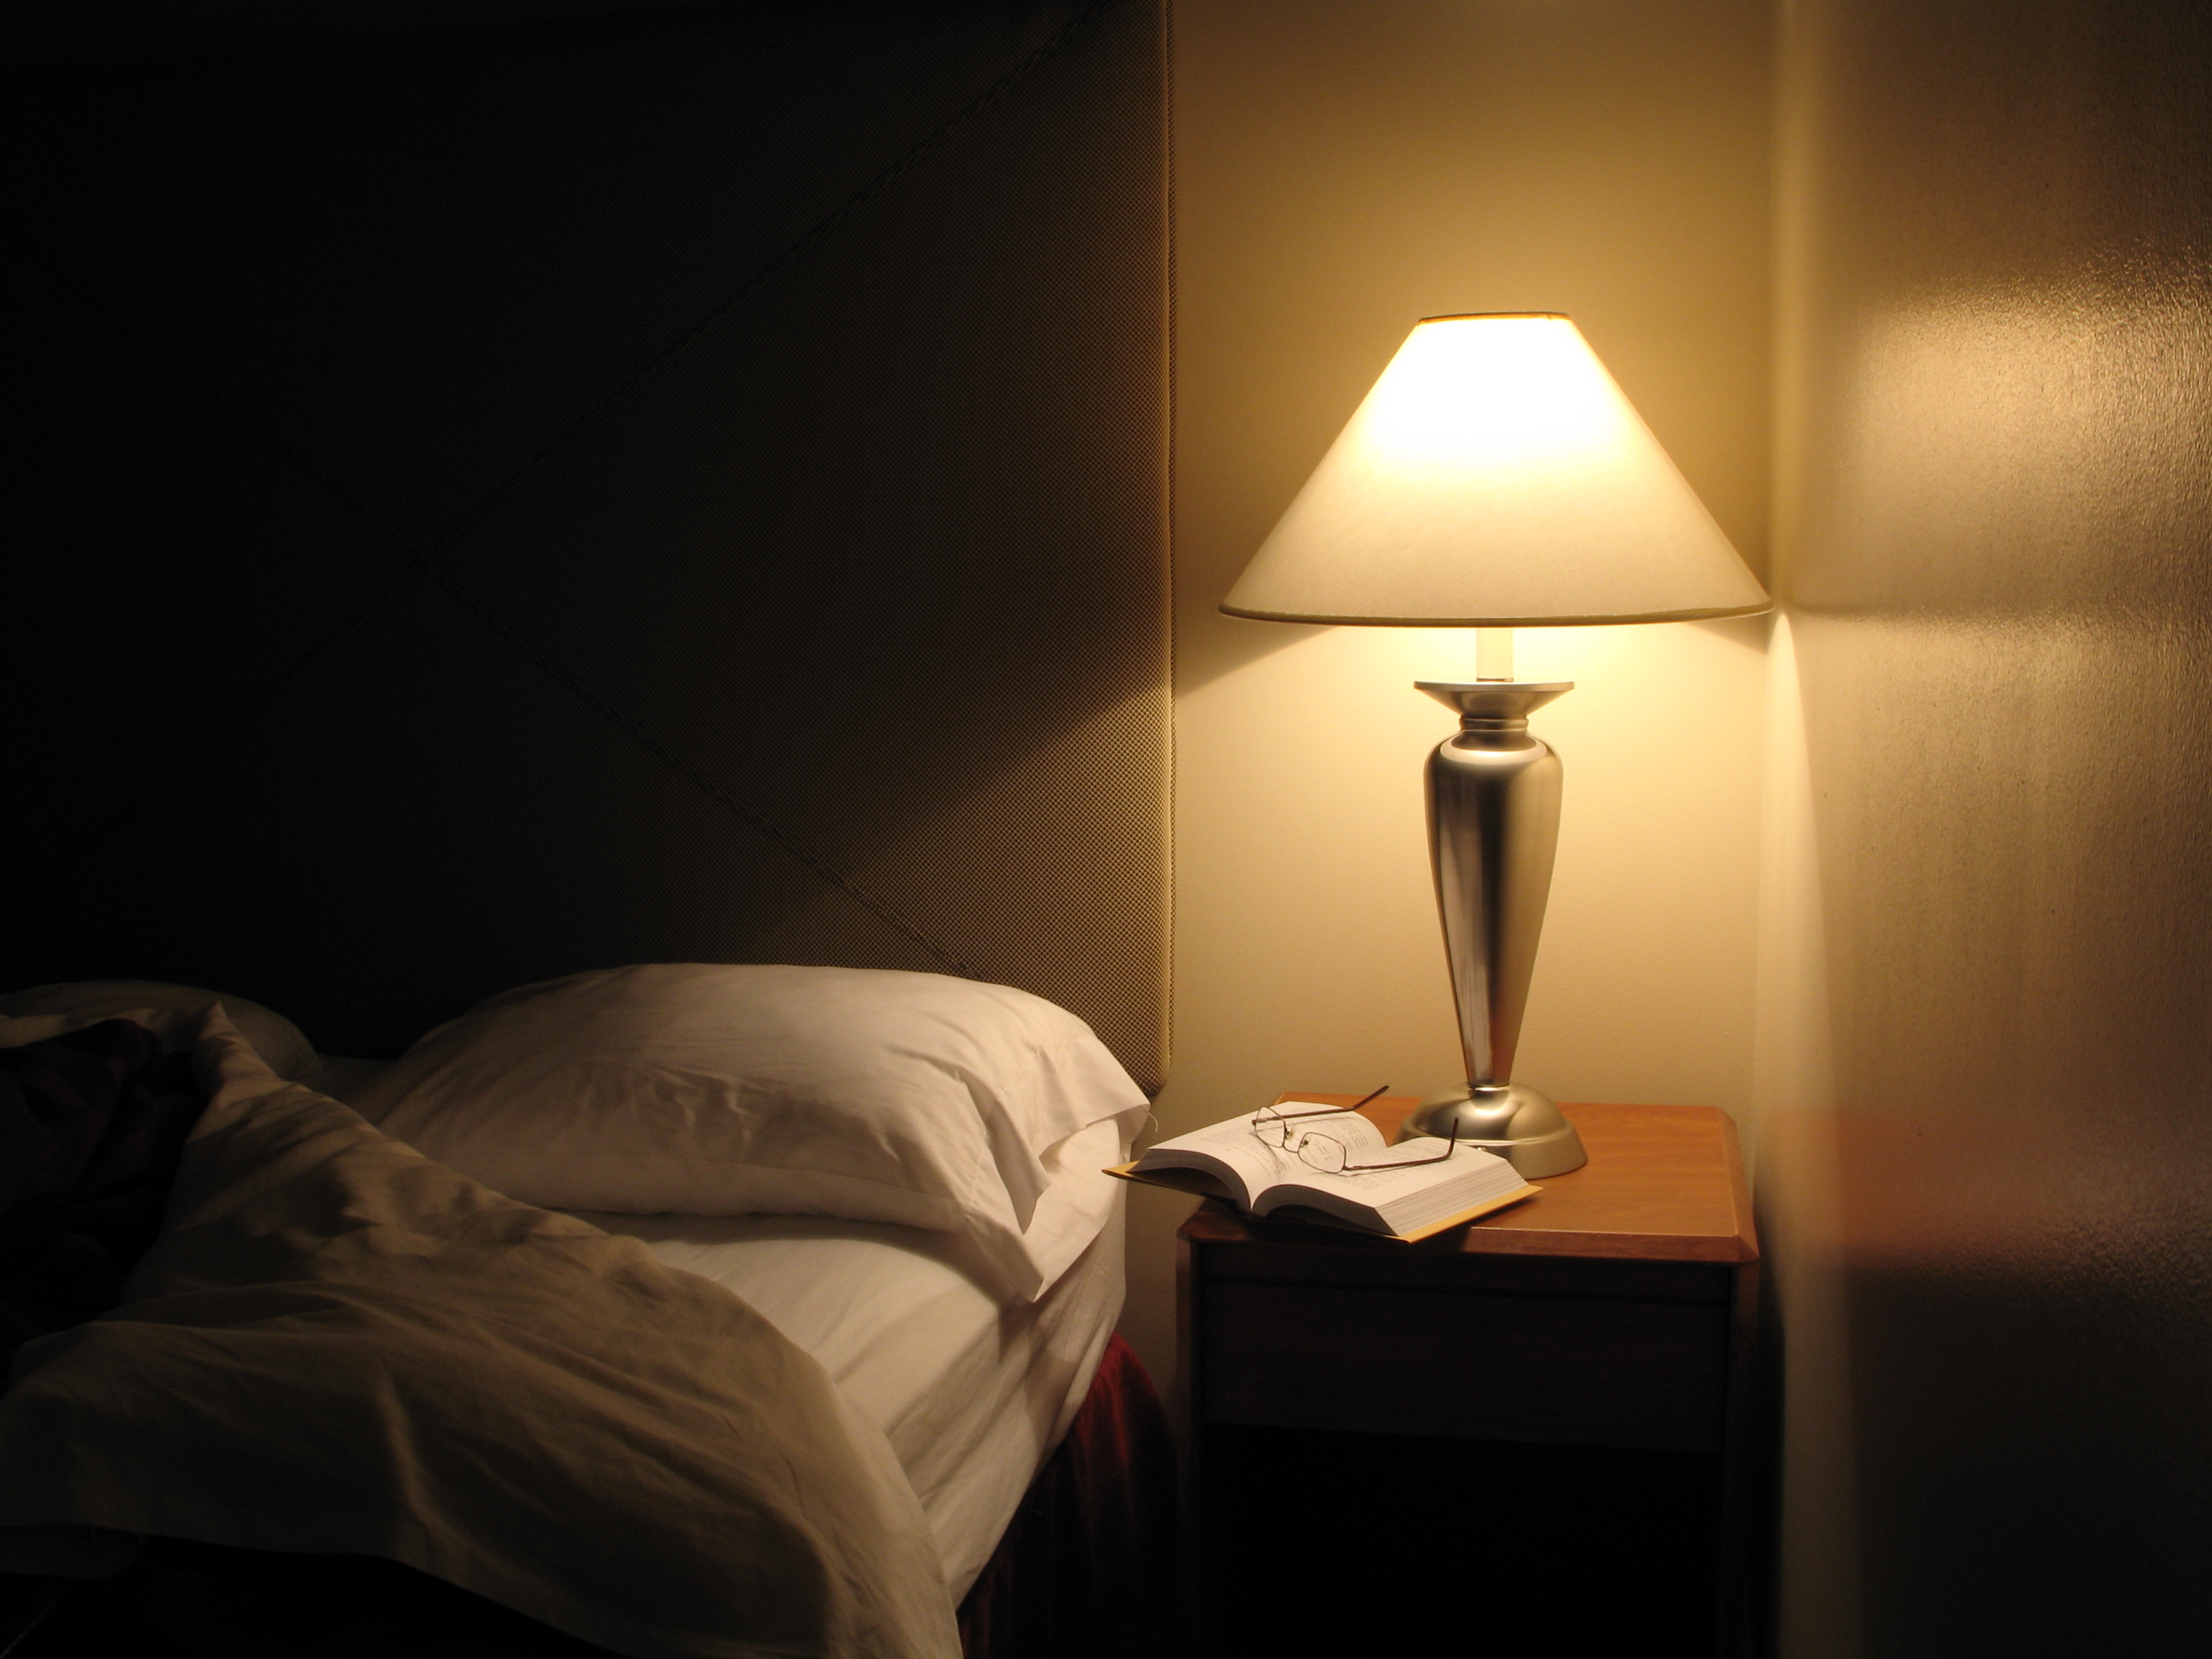 Сделай свет тускло. Лампа в темноте. Приглушенный свет в комнате. Ночники в спальню. Приглушенный свет в спальне.